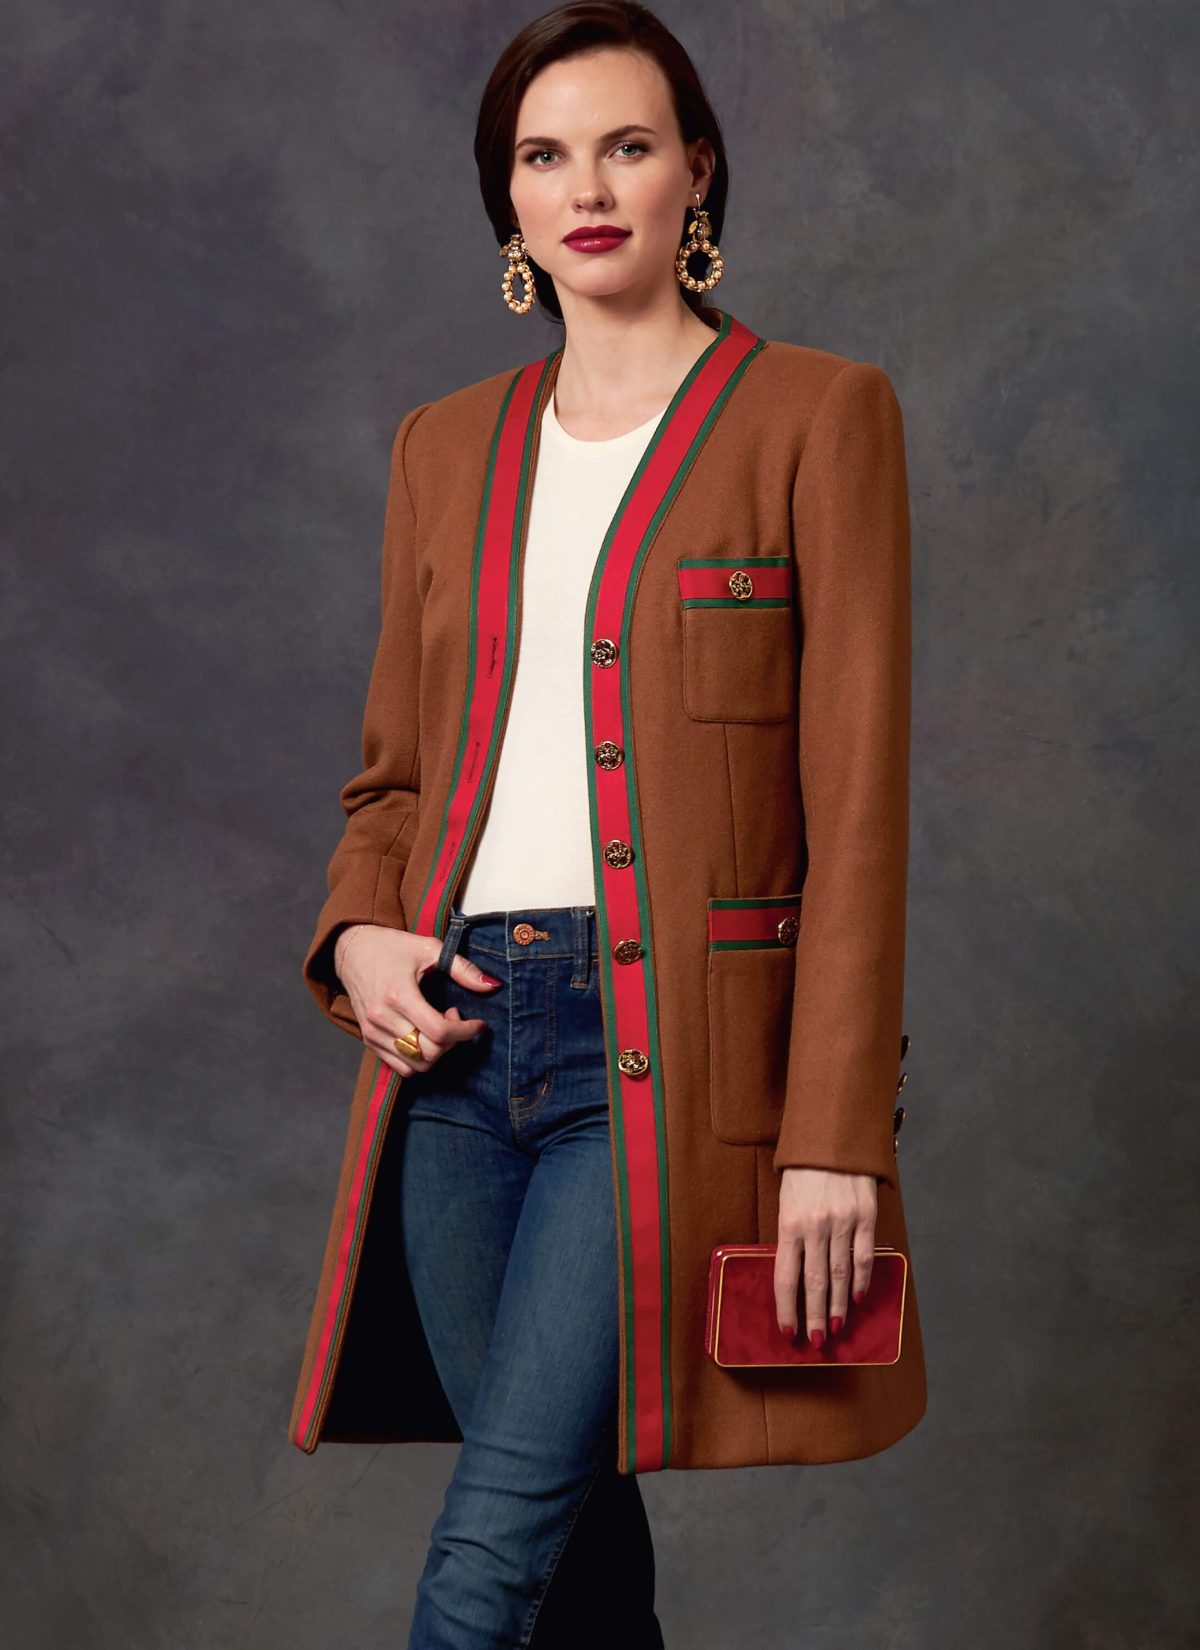 Vogue Patterns V1643 Misses'/Misses' Petite Jacket, Dress and Skirt